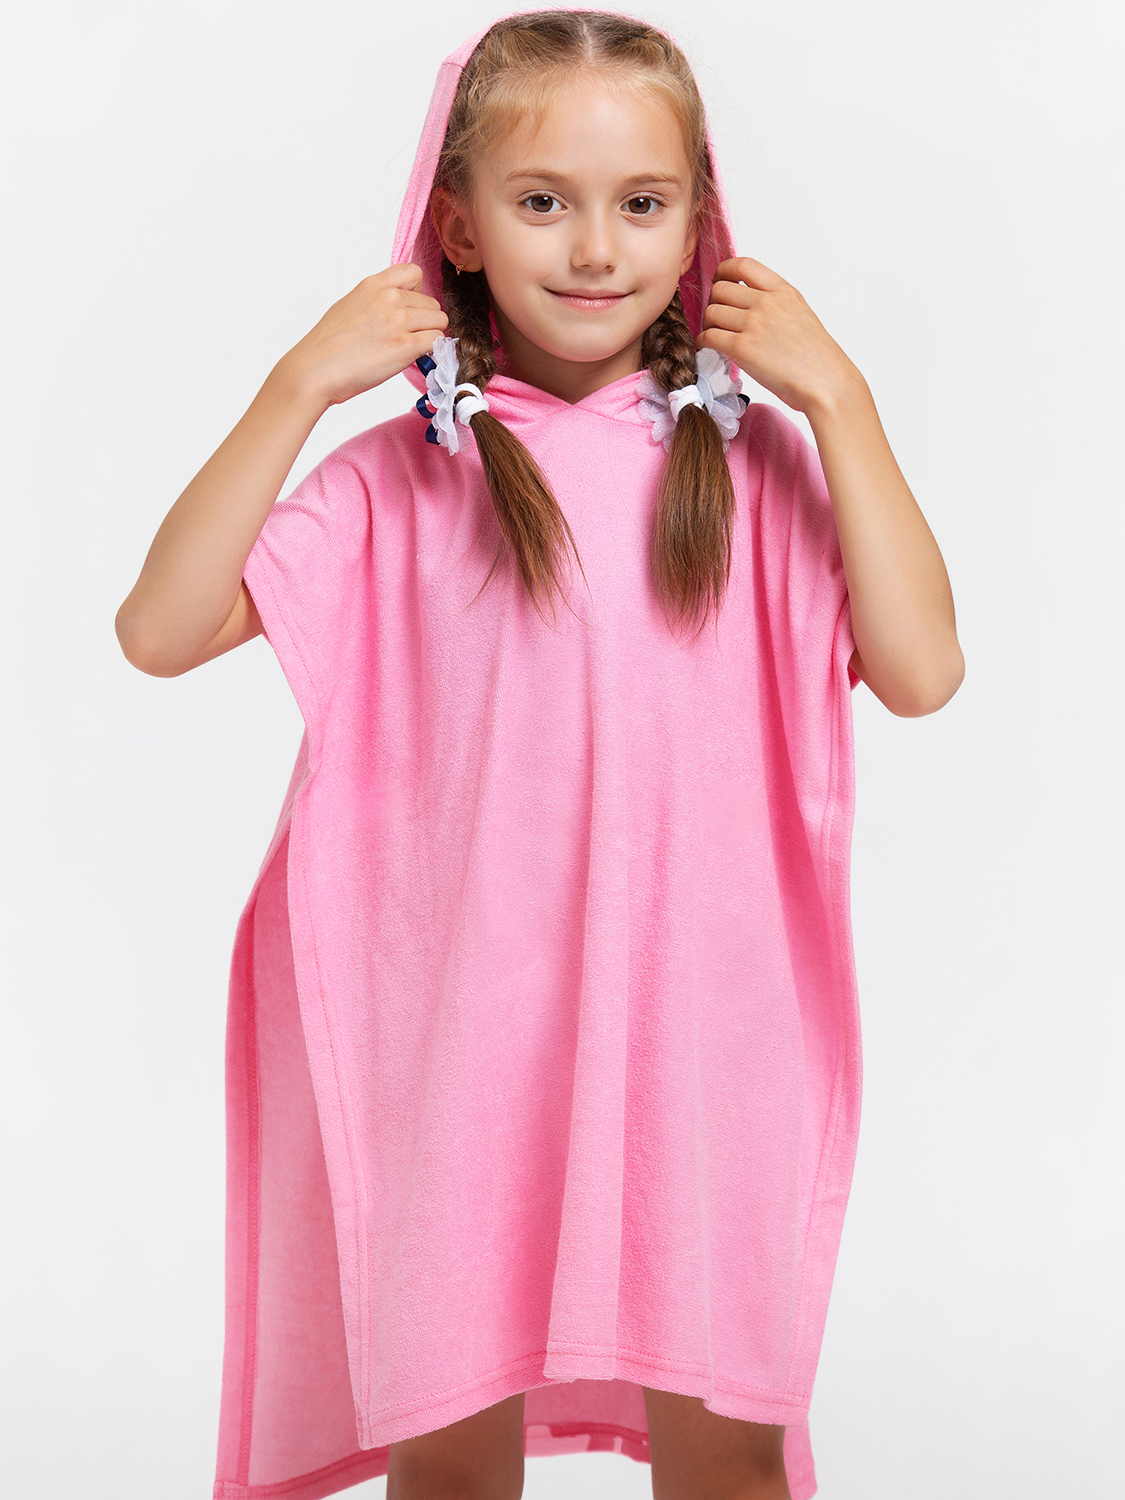 фото Полотенце детское happyfox пончно hfg2019 размер 61x52 см, розовый